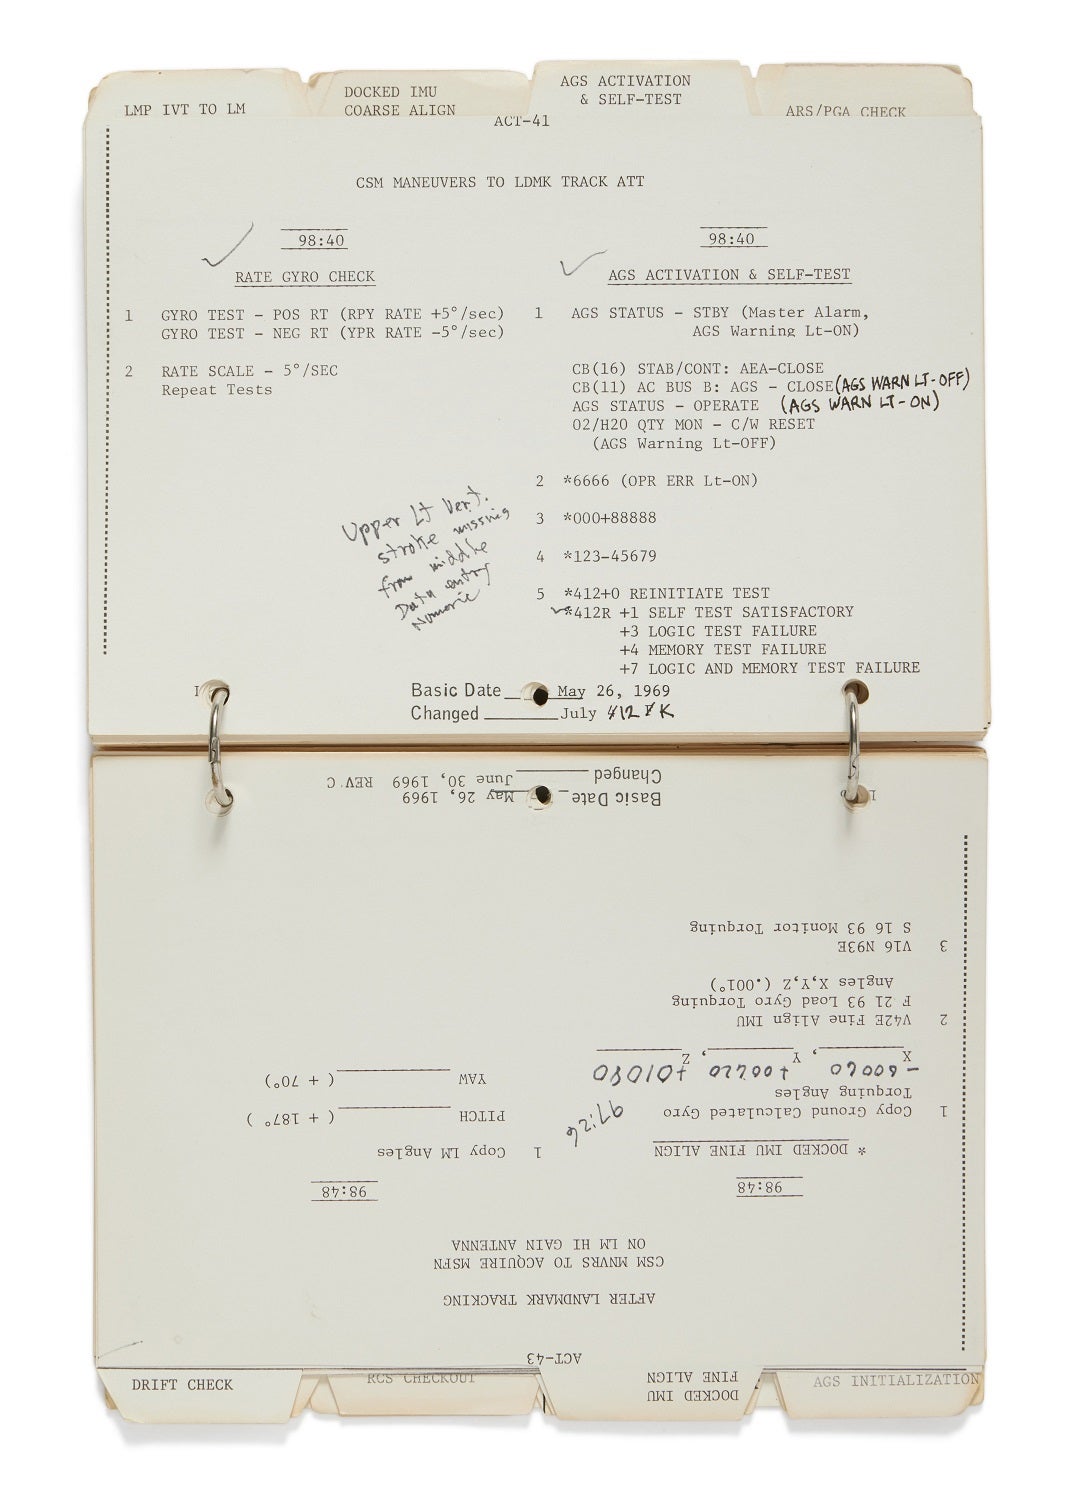 Notebook with lunar flight tasks in black ink